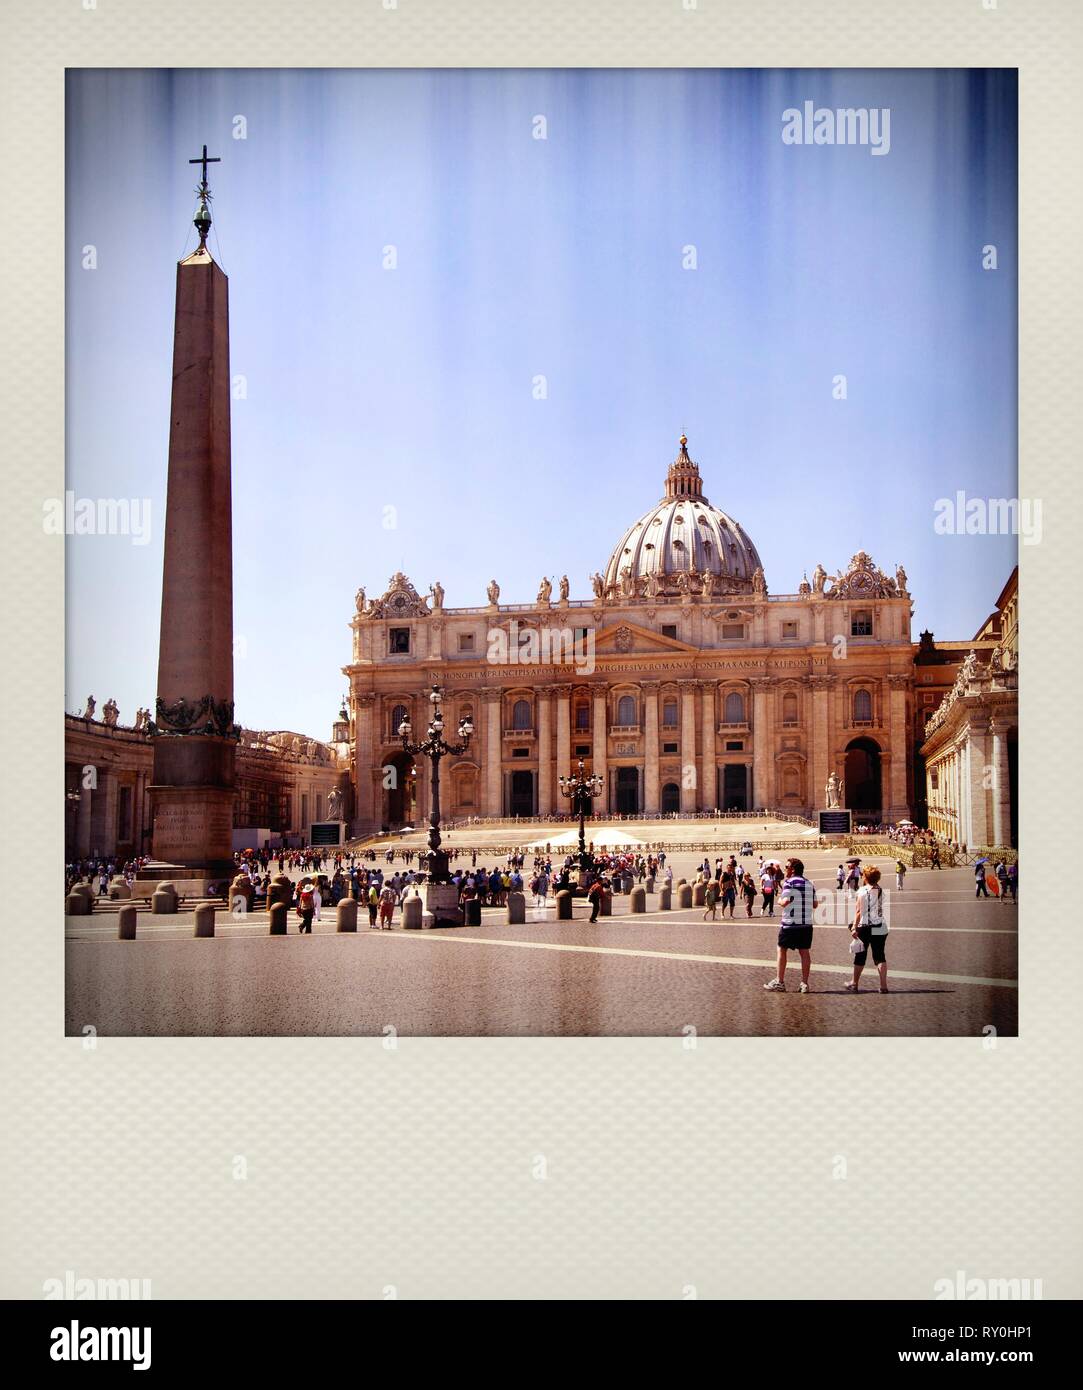 Polaroid Wirkung, Vatikan, Petersplatz, Vatikan, Rom, Italien, Europa  Stockfotografie - Alamy